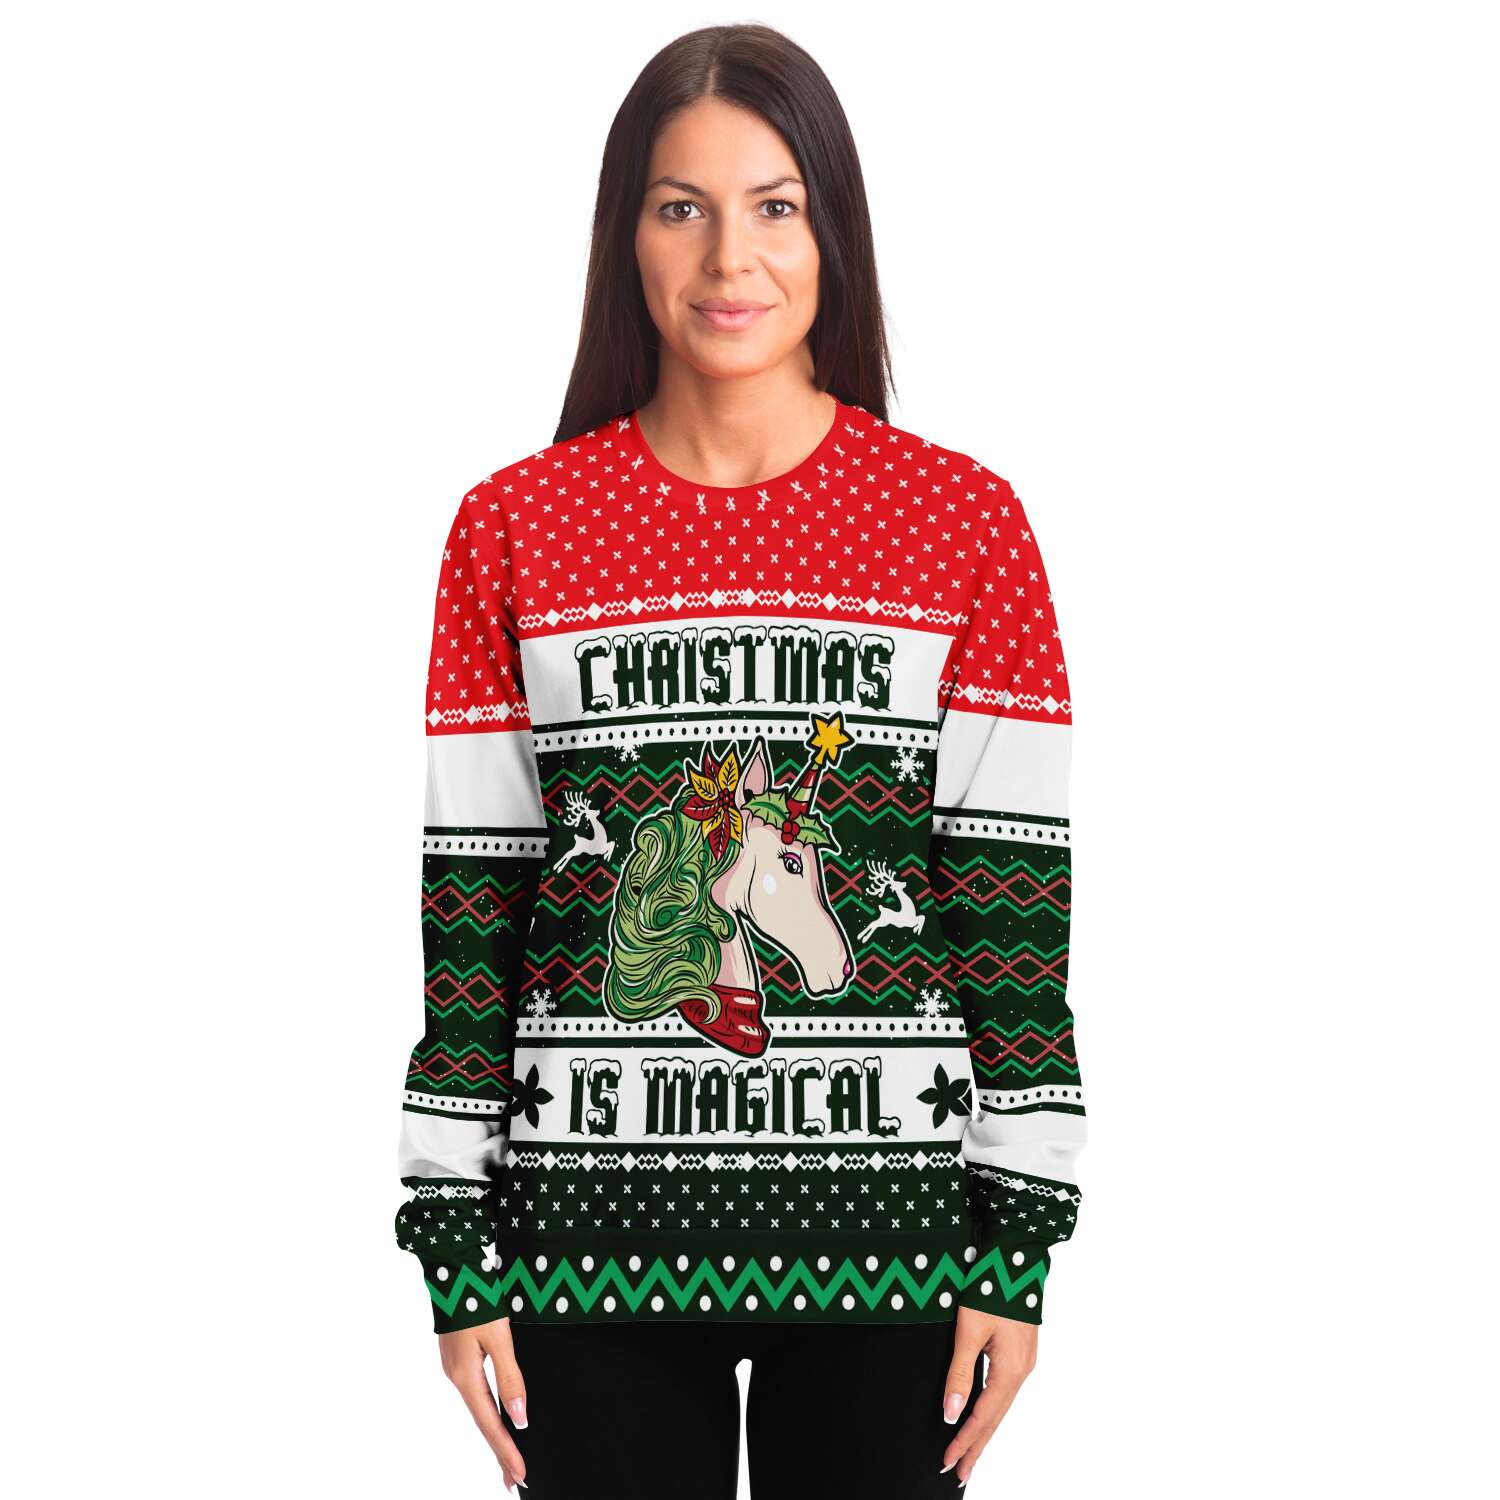 Magical Unicorn Sweatshirt | Unisex Ugly Christmas Sweater, Xmas Sweater, Holiday Sweater, Festive Sweater, Funny Sweater, Funny Party Shirt